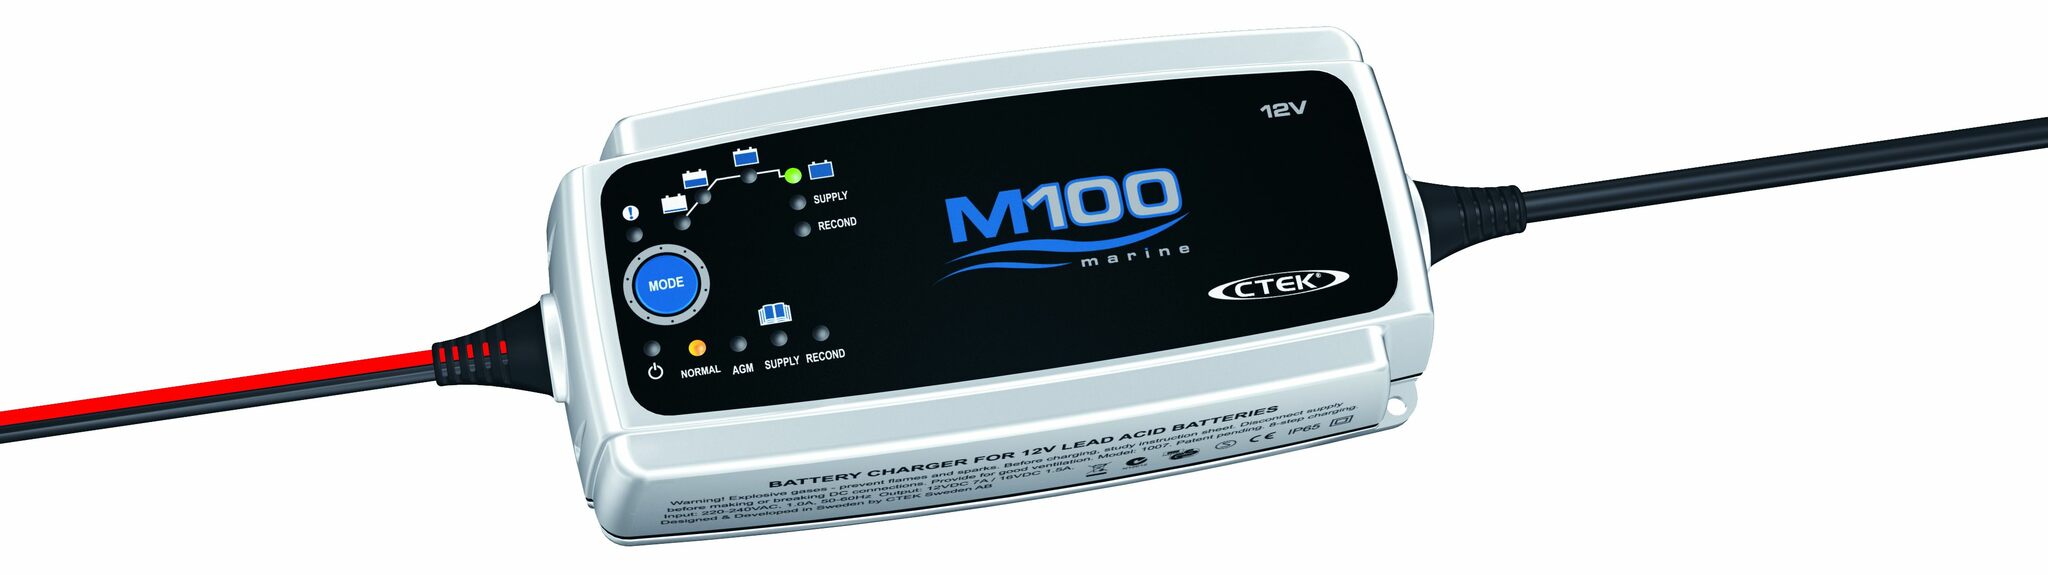 CTEK Batterieladegerät M100